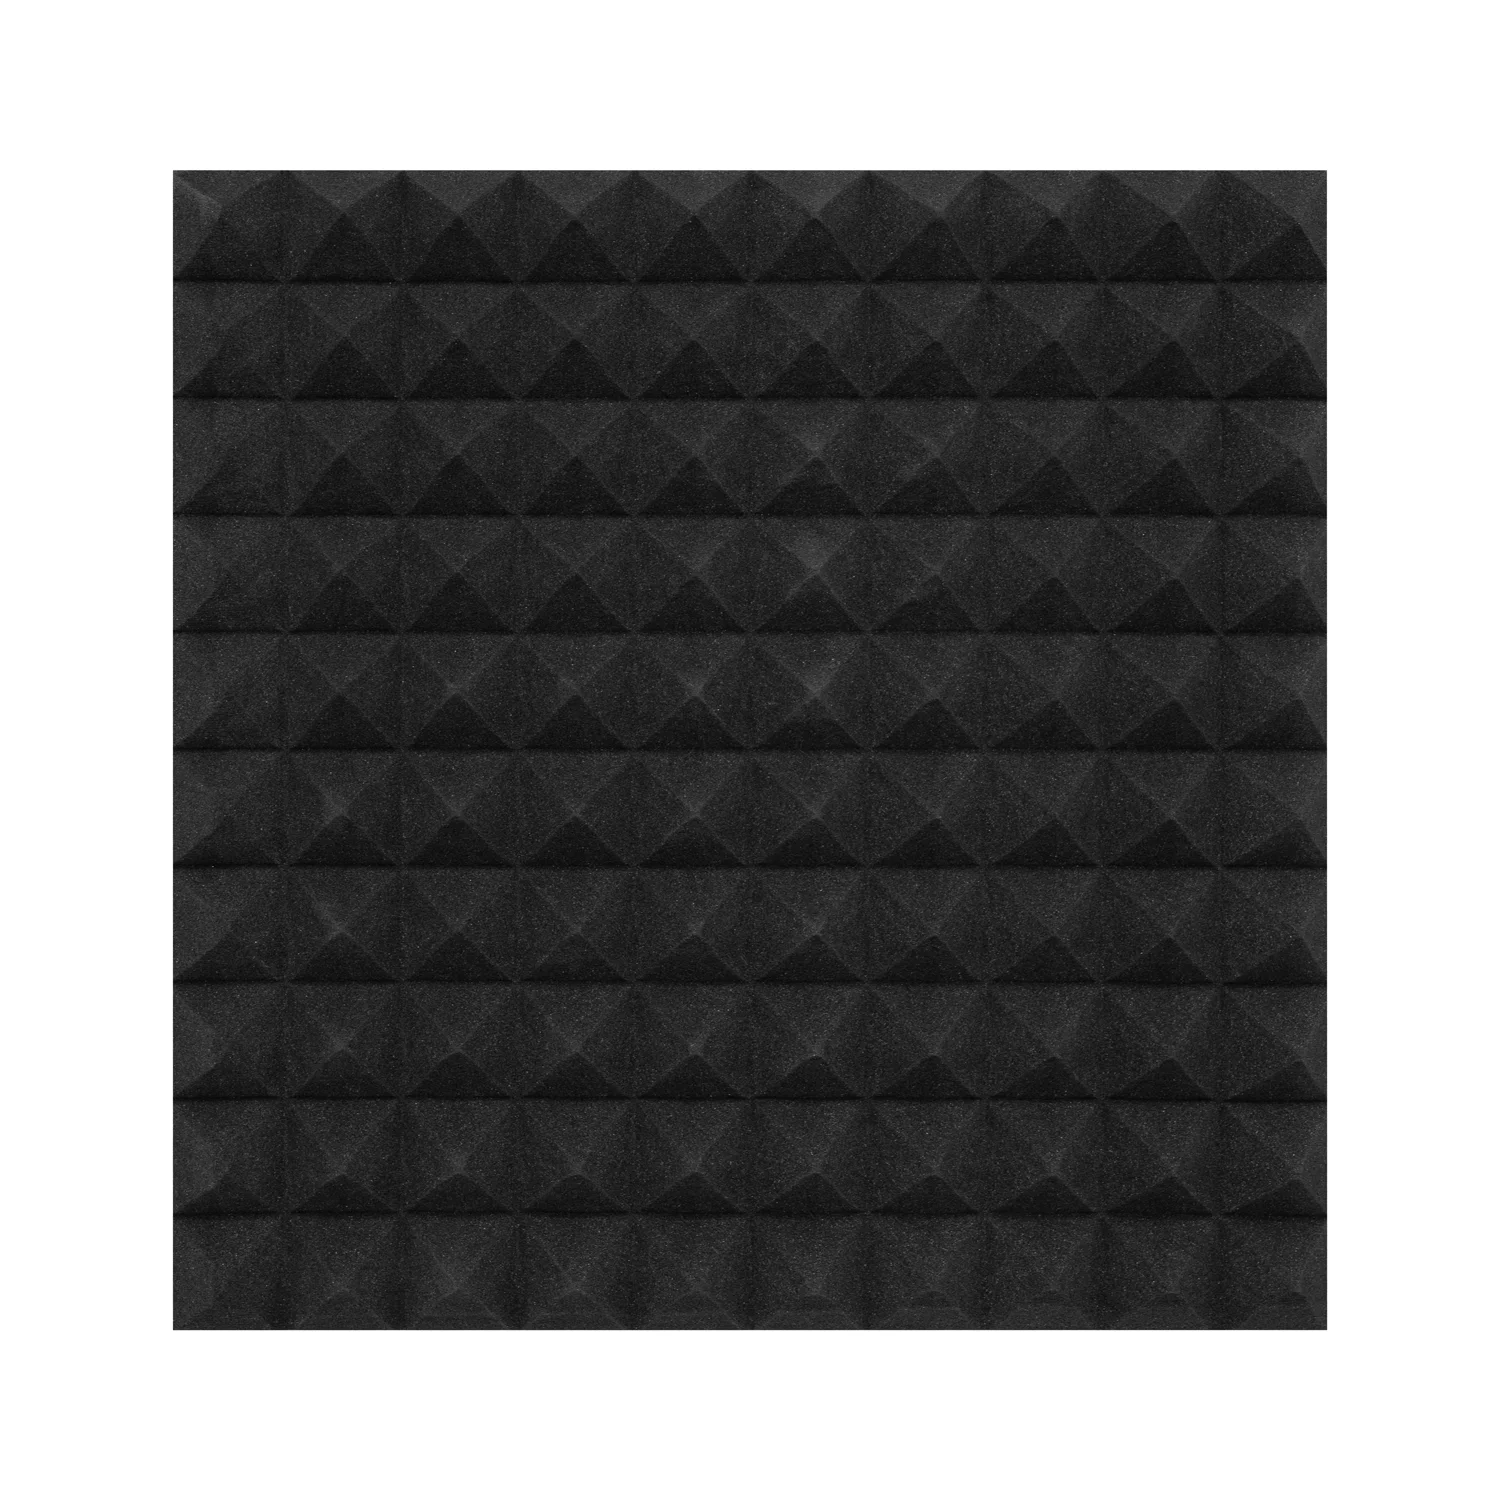 Hangelnyelő szivacs, 50x50cm, piramis, fekete, öntapadós